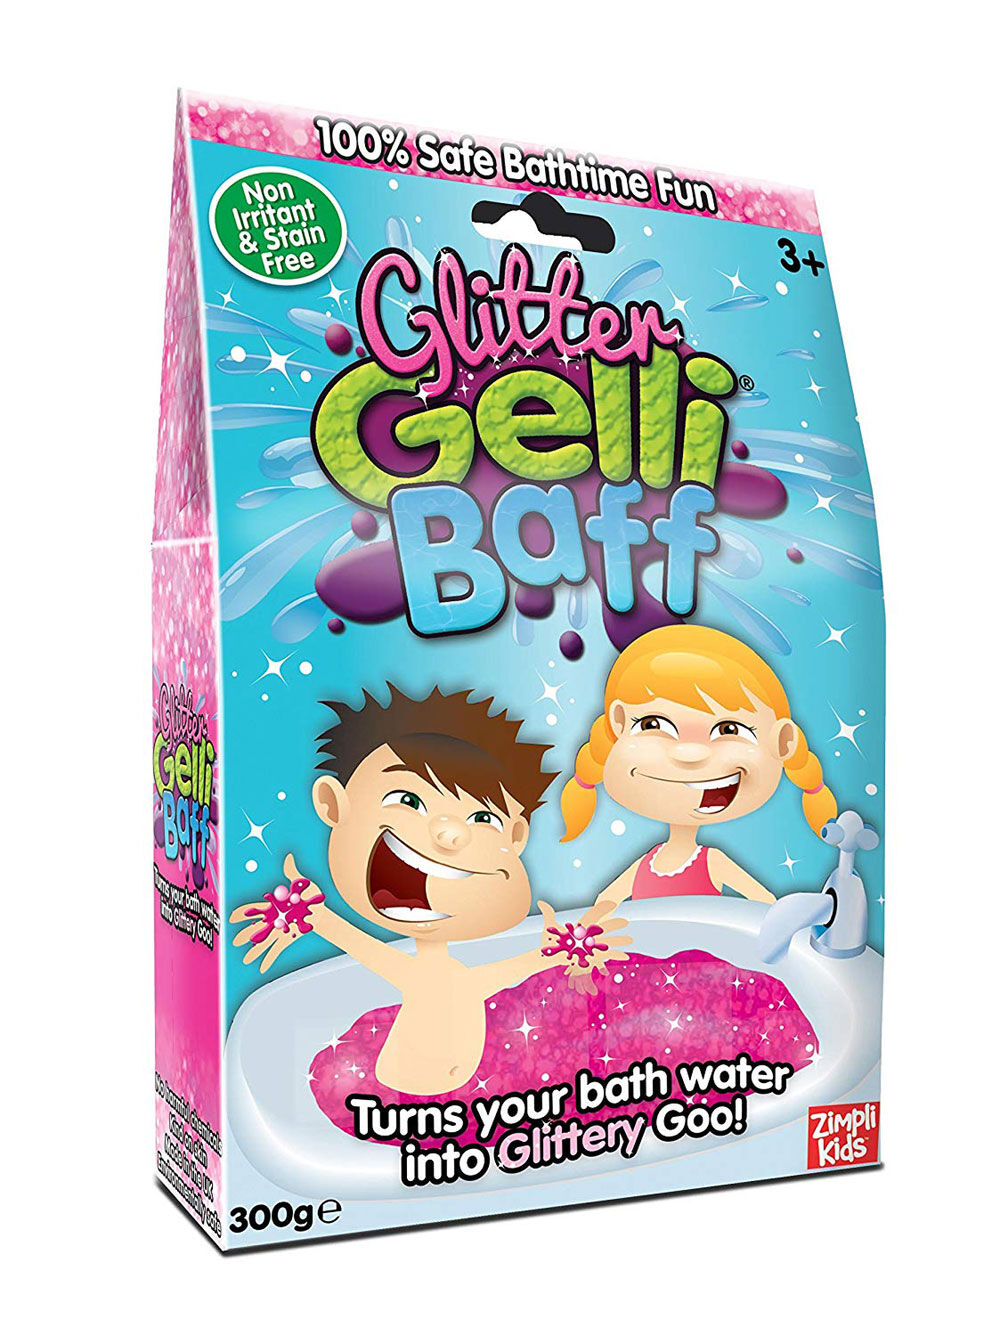 Pack Mega Baff pour Jouer à l'heure du Bain Zimpli Kids 1000 g biodégradable Convient aux Enfants à partir de 3 Ans Comprend 4 x Gelli Baff 2 x Slime Baff & 6 x Crackle Baff 